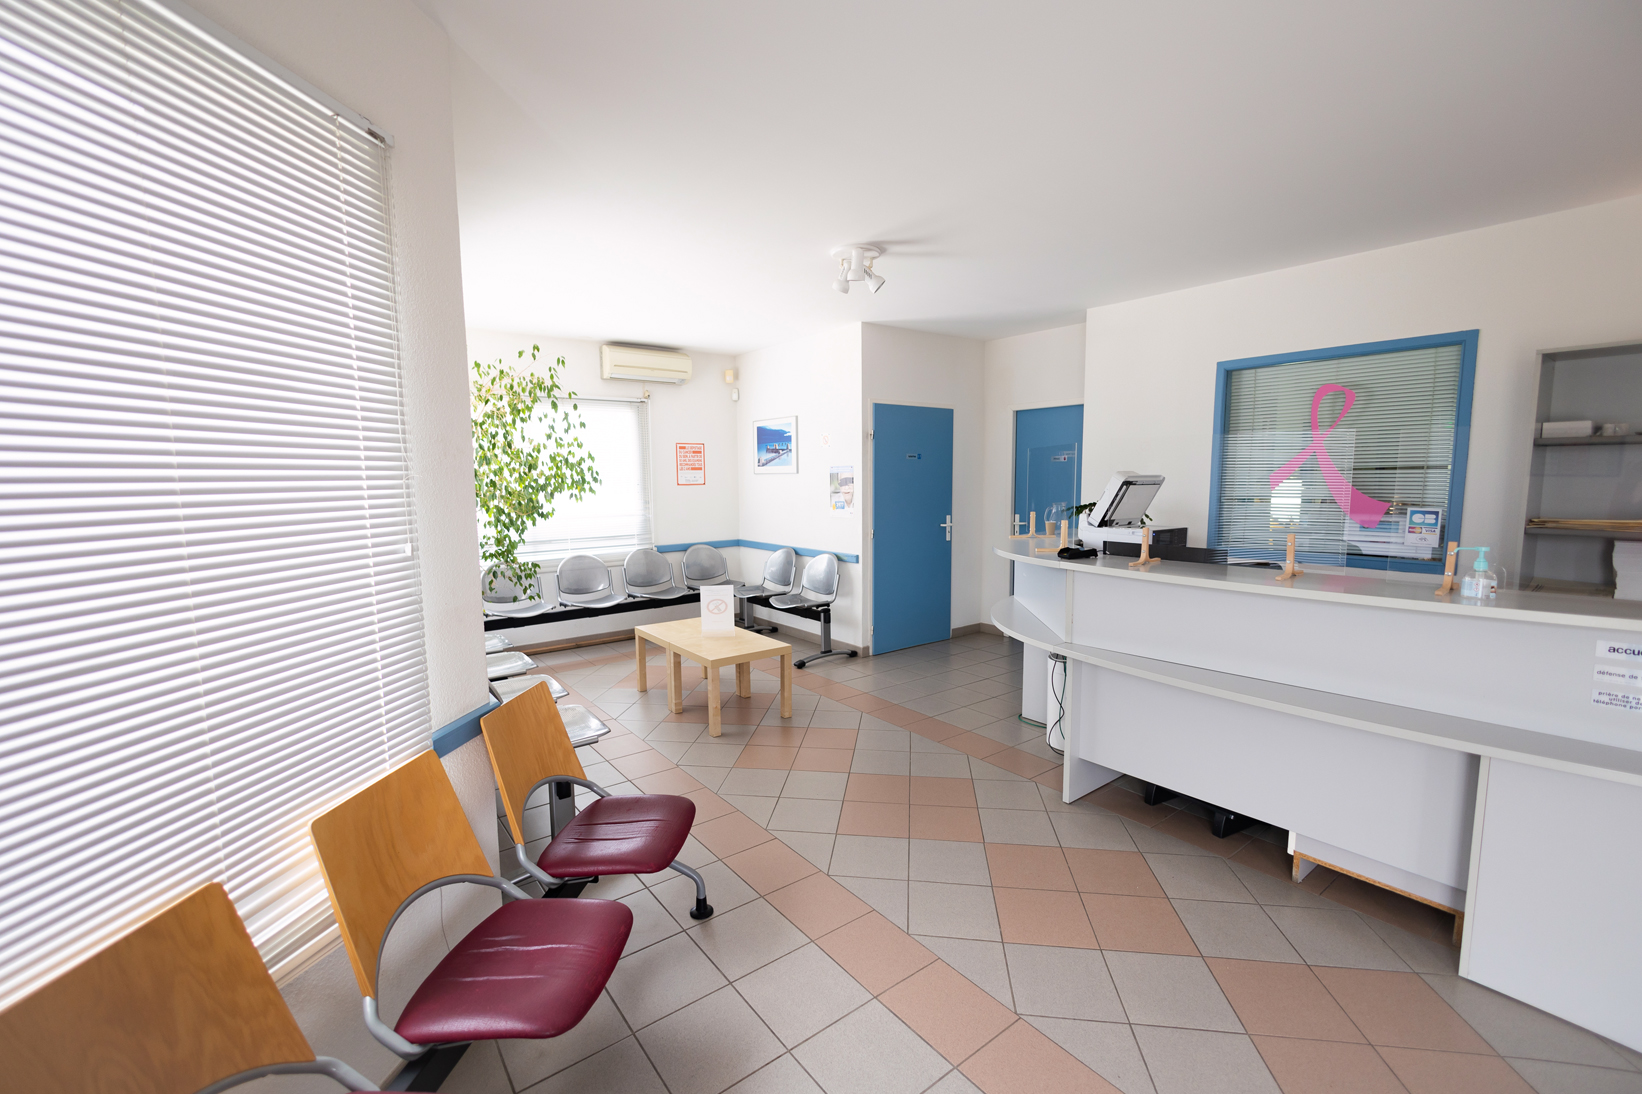 Centre de radiologie de Coutras - salle d'attente